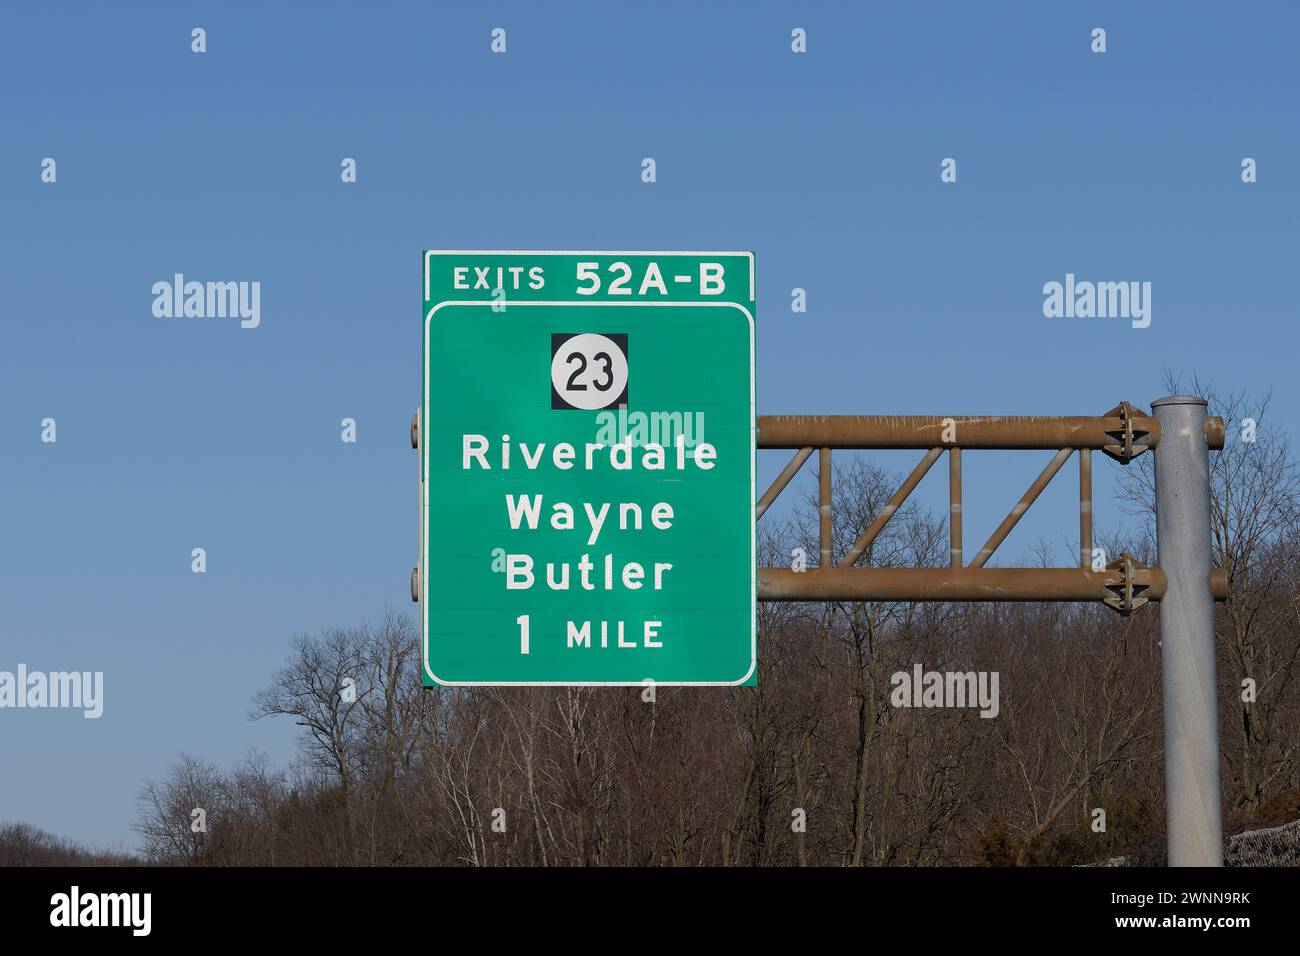 Nehmen Sie die Ausfahrt 52 A-B auf der I-287 in Richtung NJ-23 in Richtung Riverdale, Wayne und Butler, New Jersey Stockfoto